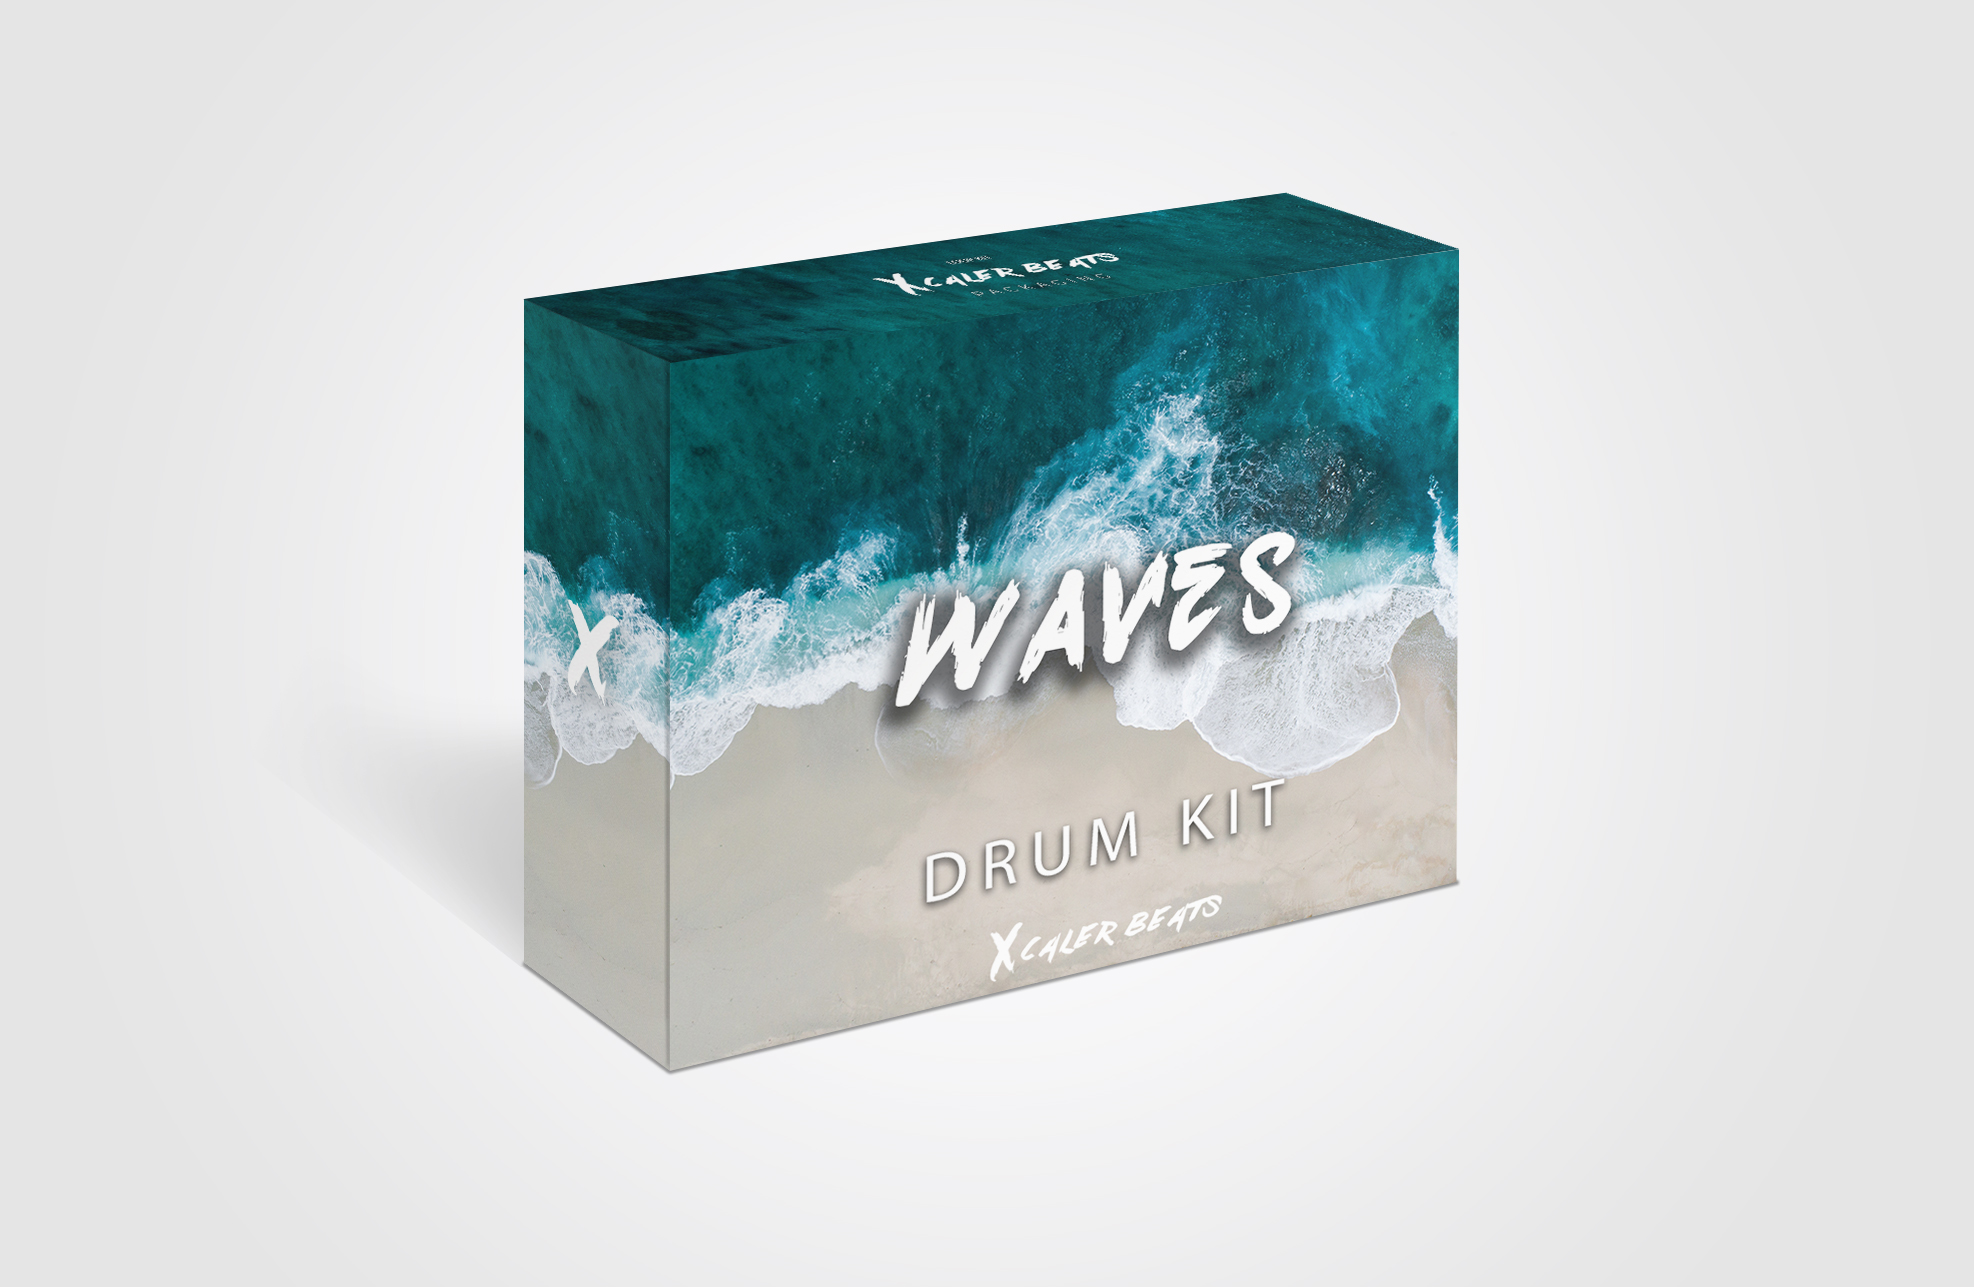 FREE Download Waves Drum Kit – Xcaler Beats – Drum Kits, Sound Kits, Beat Store